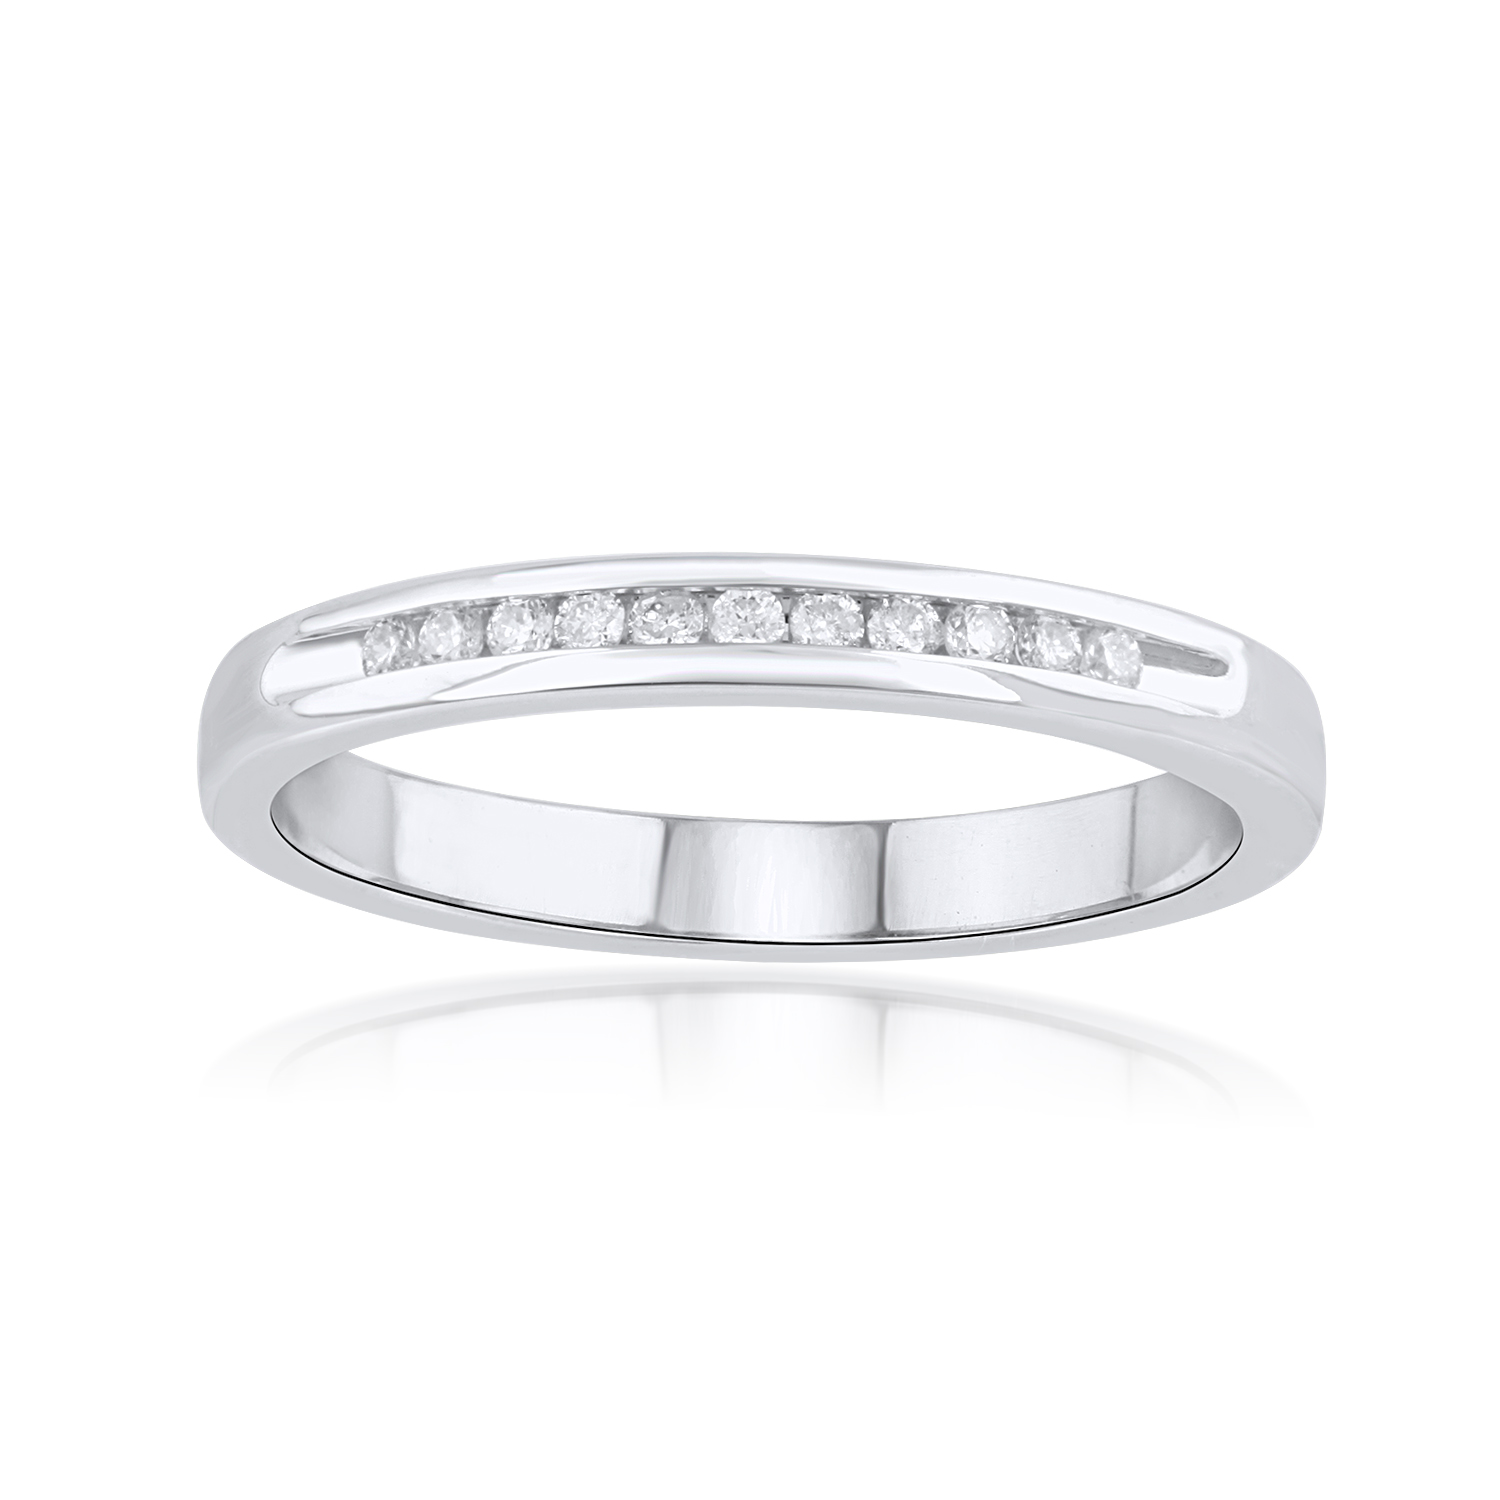 0.1 Carat Diamond Wedding Band Ring in 14k White Gold